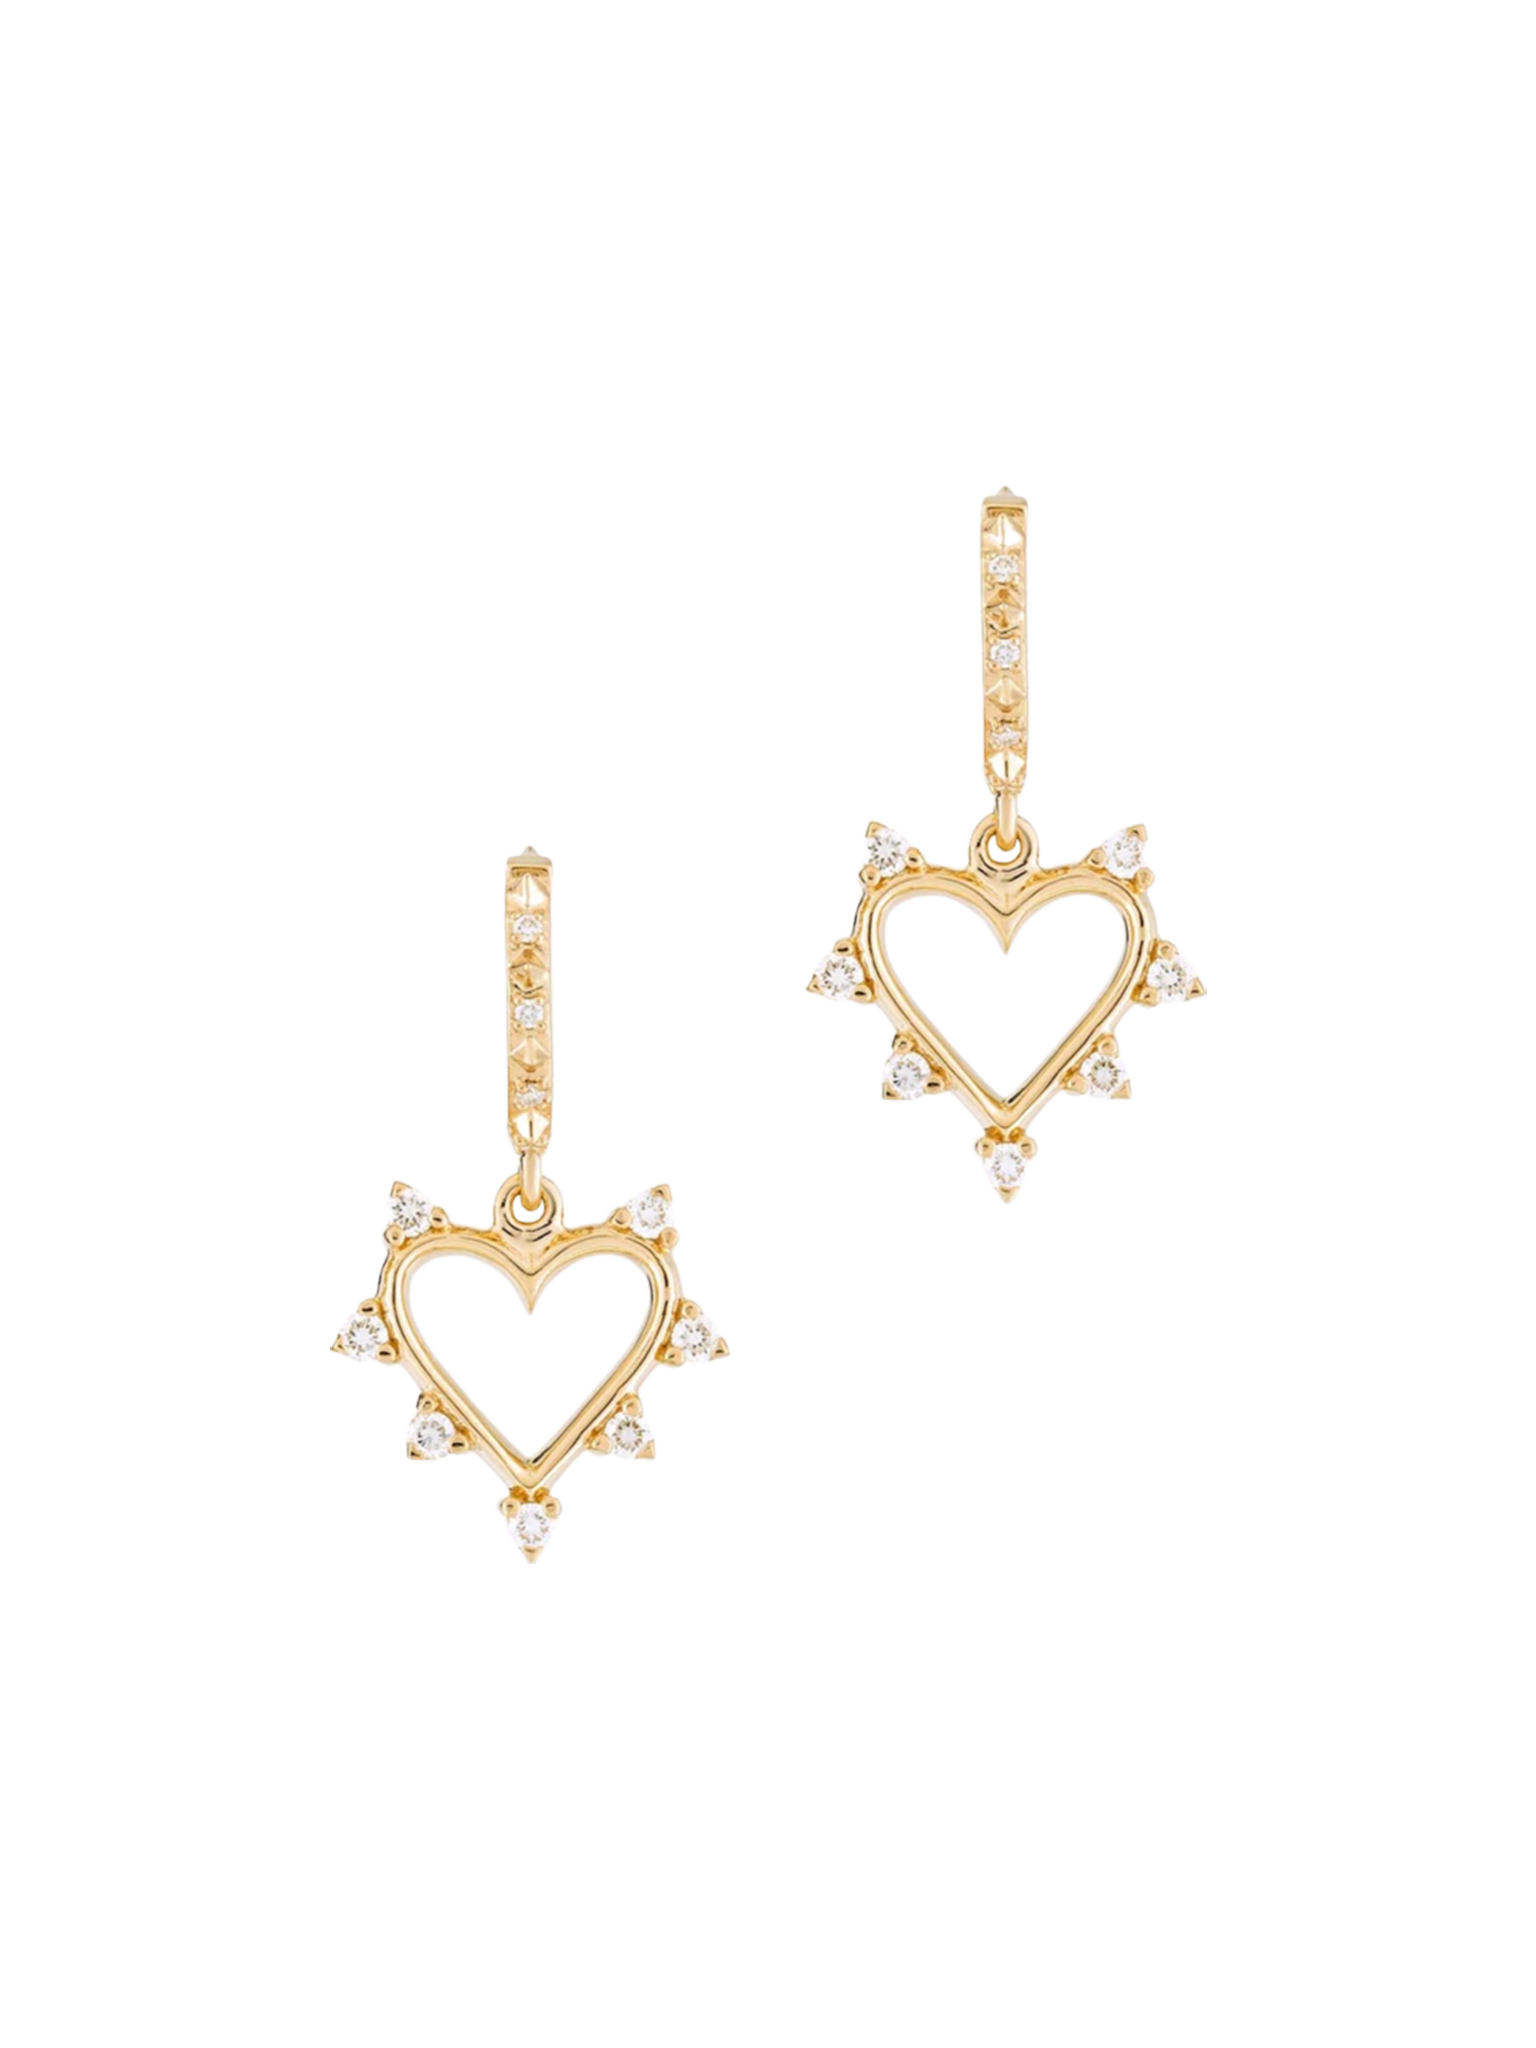 Mini open heart earrings